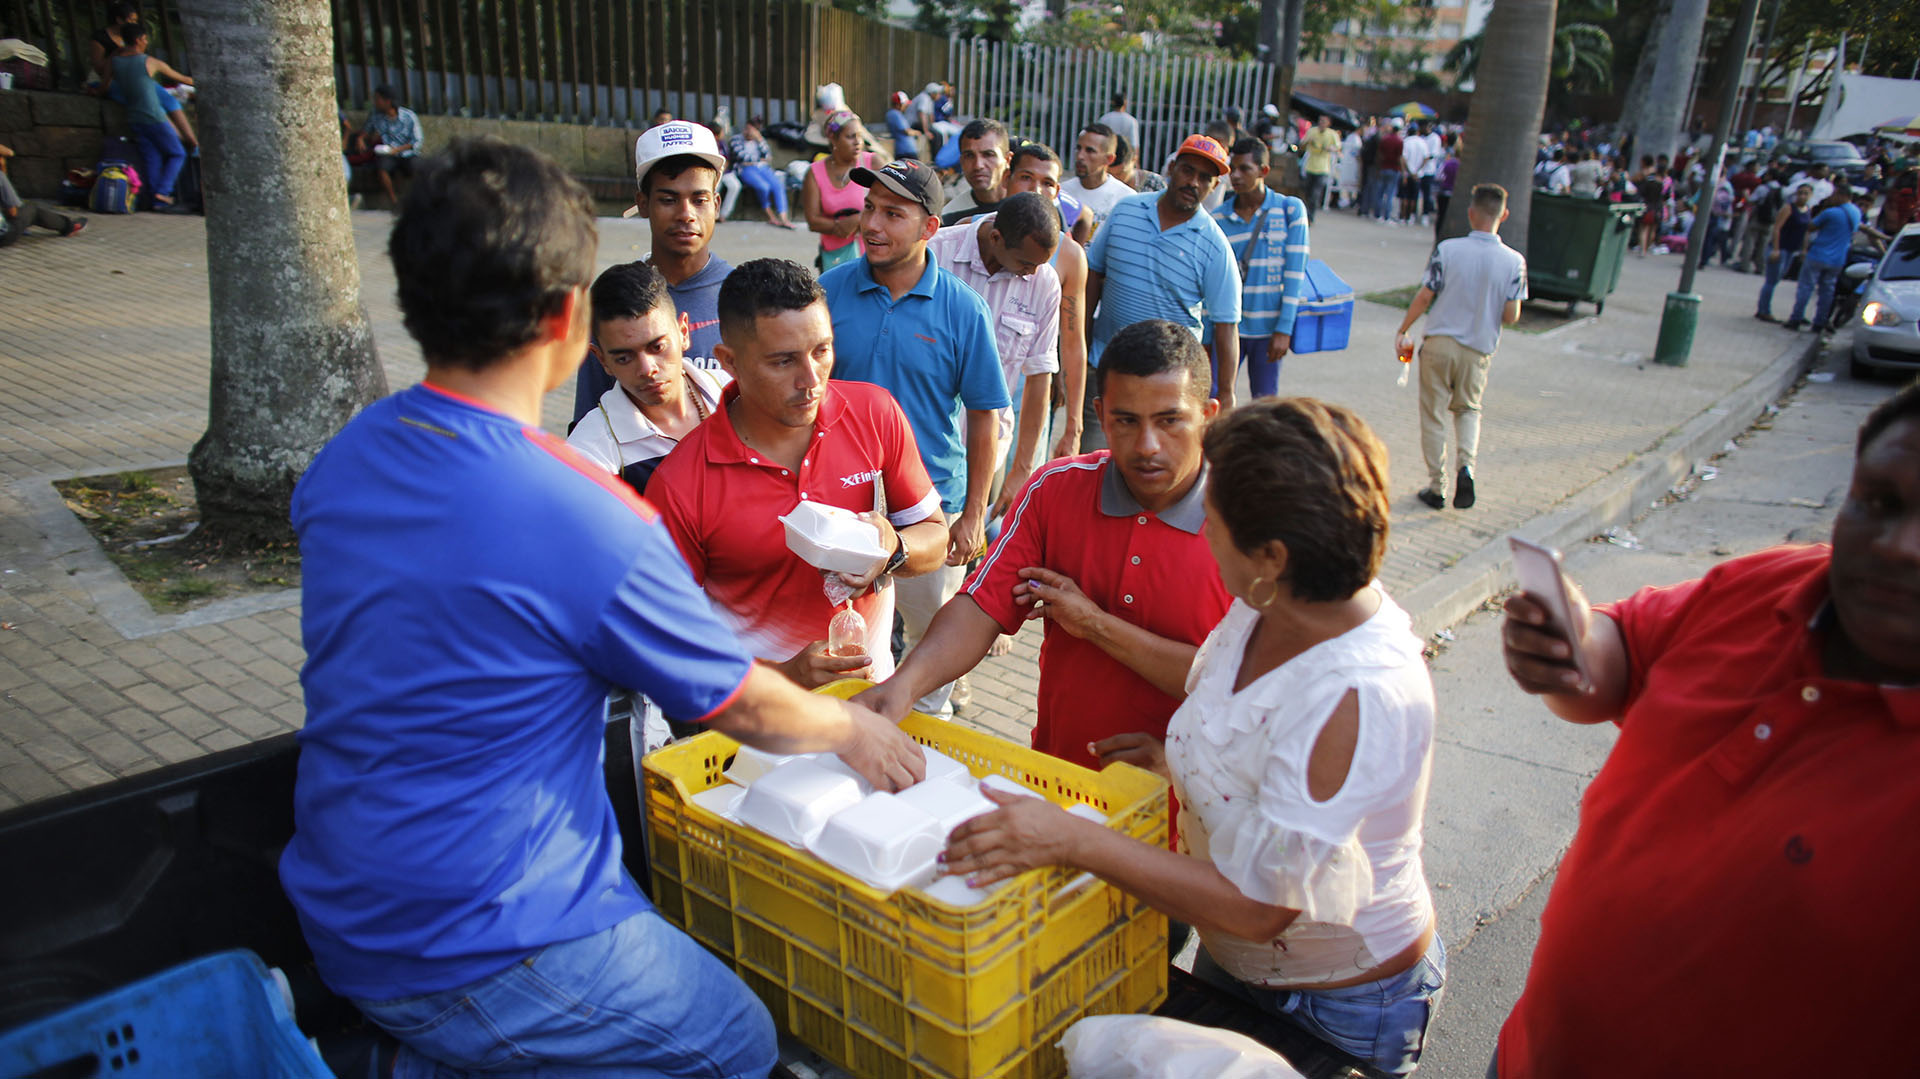 El reportaje de Six se ocupaba de la gran migración venezolana (AP/Ariana Cubillos)